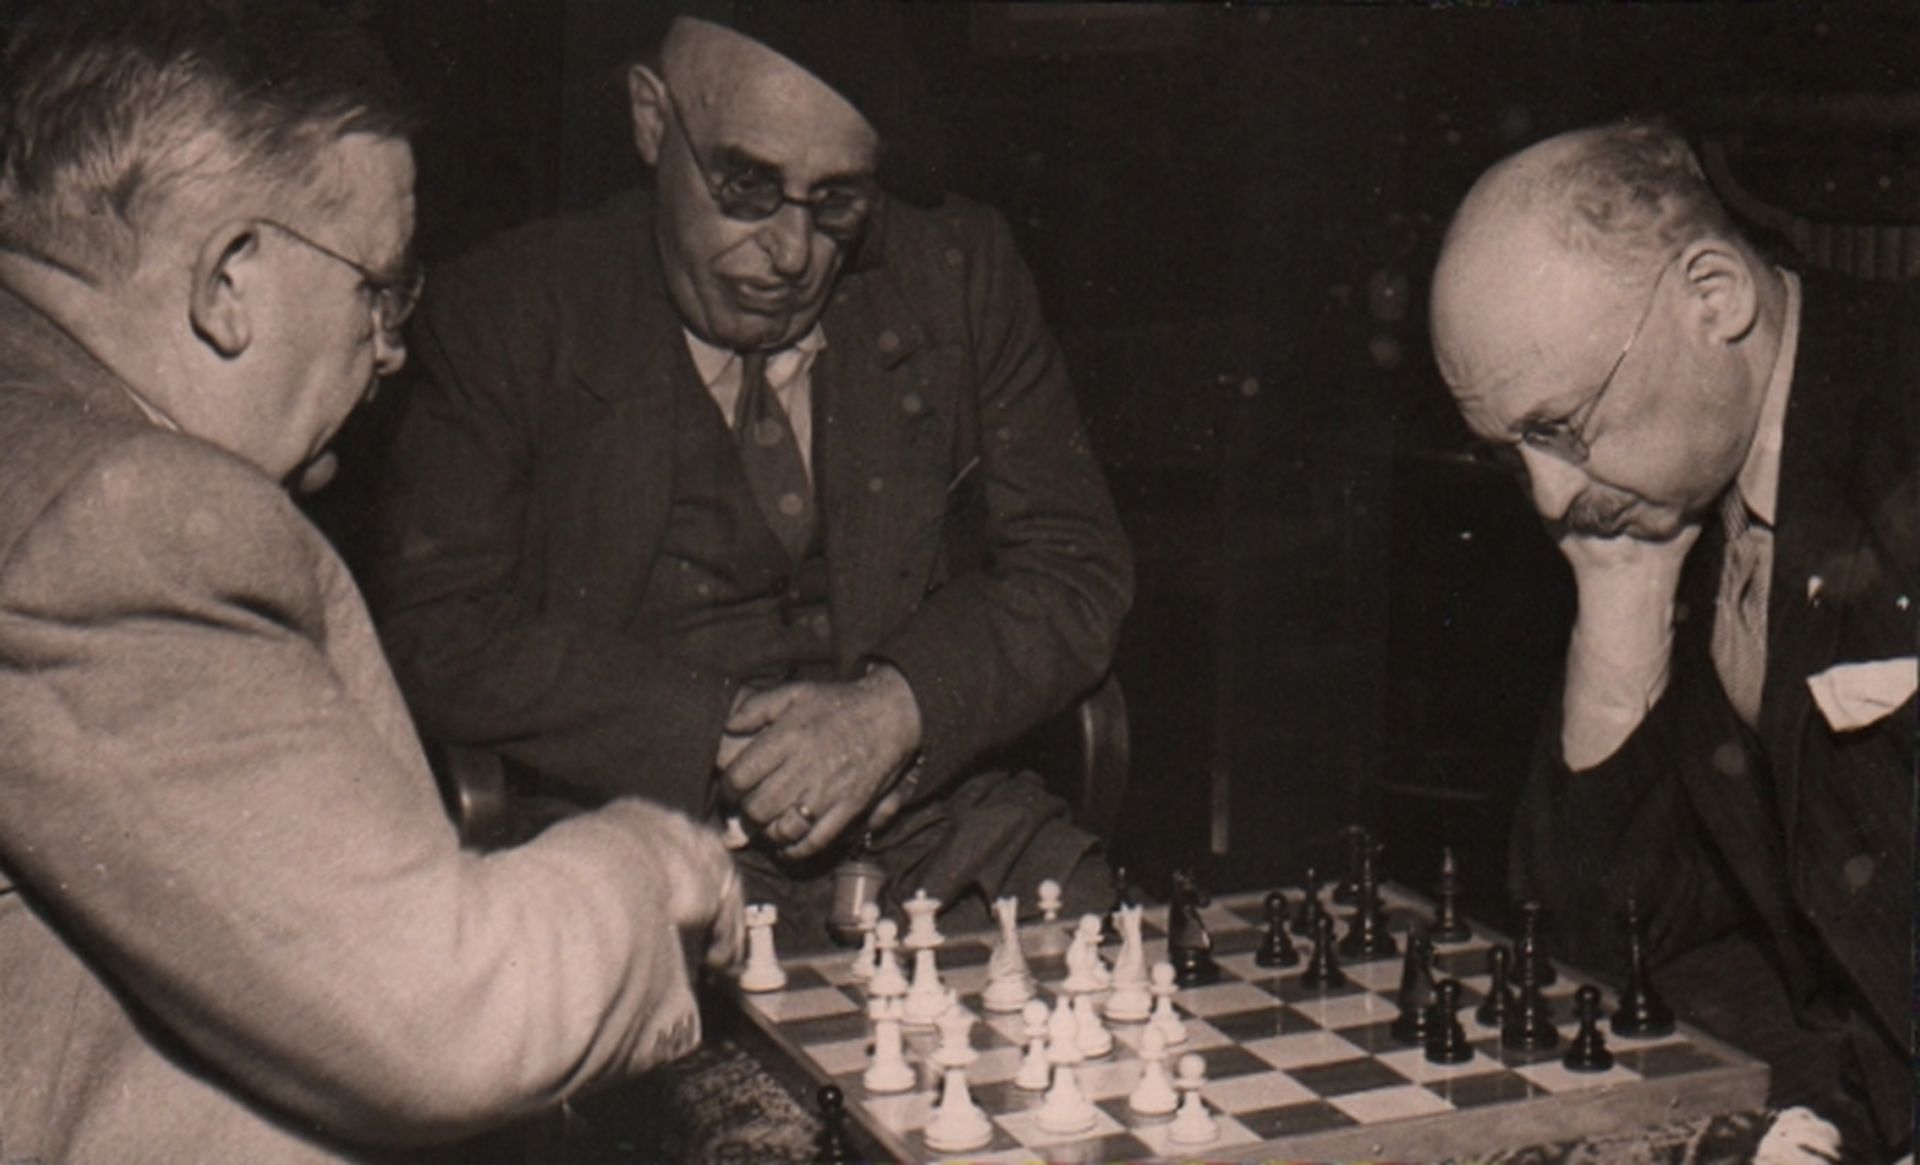 Foto. Tartakower, S., M. Vidmar und O. Bernstein. Schwarzweißes Pressefoto mit einer Szene von